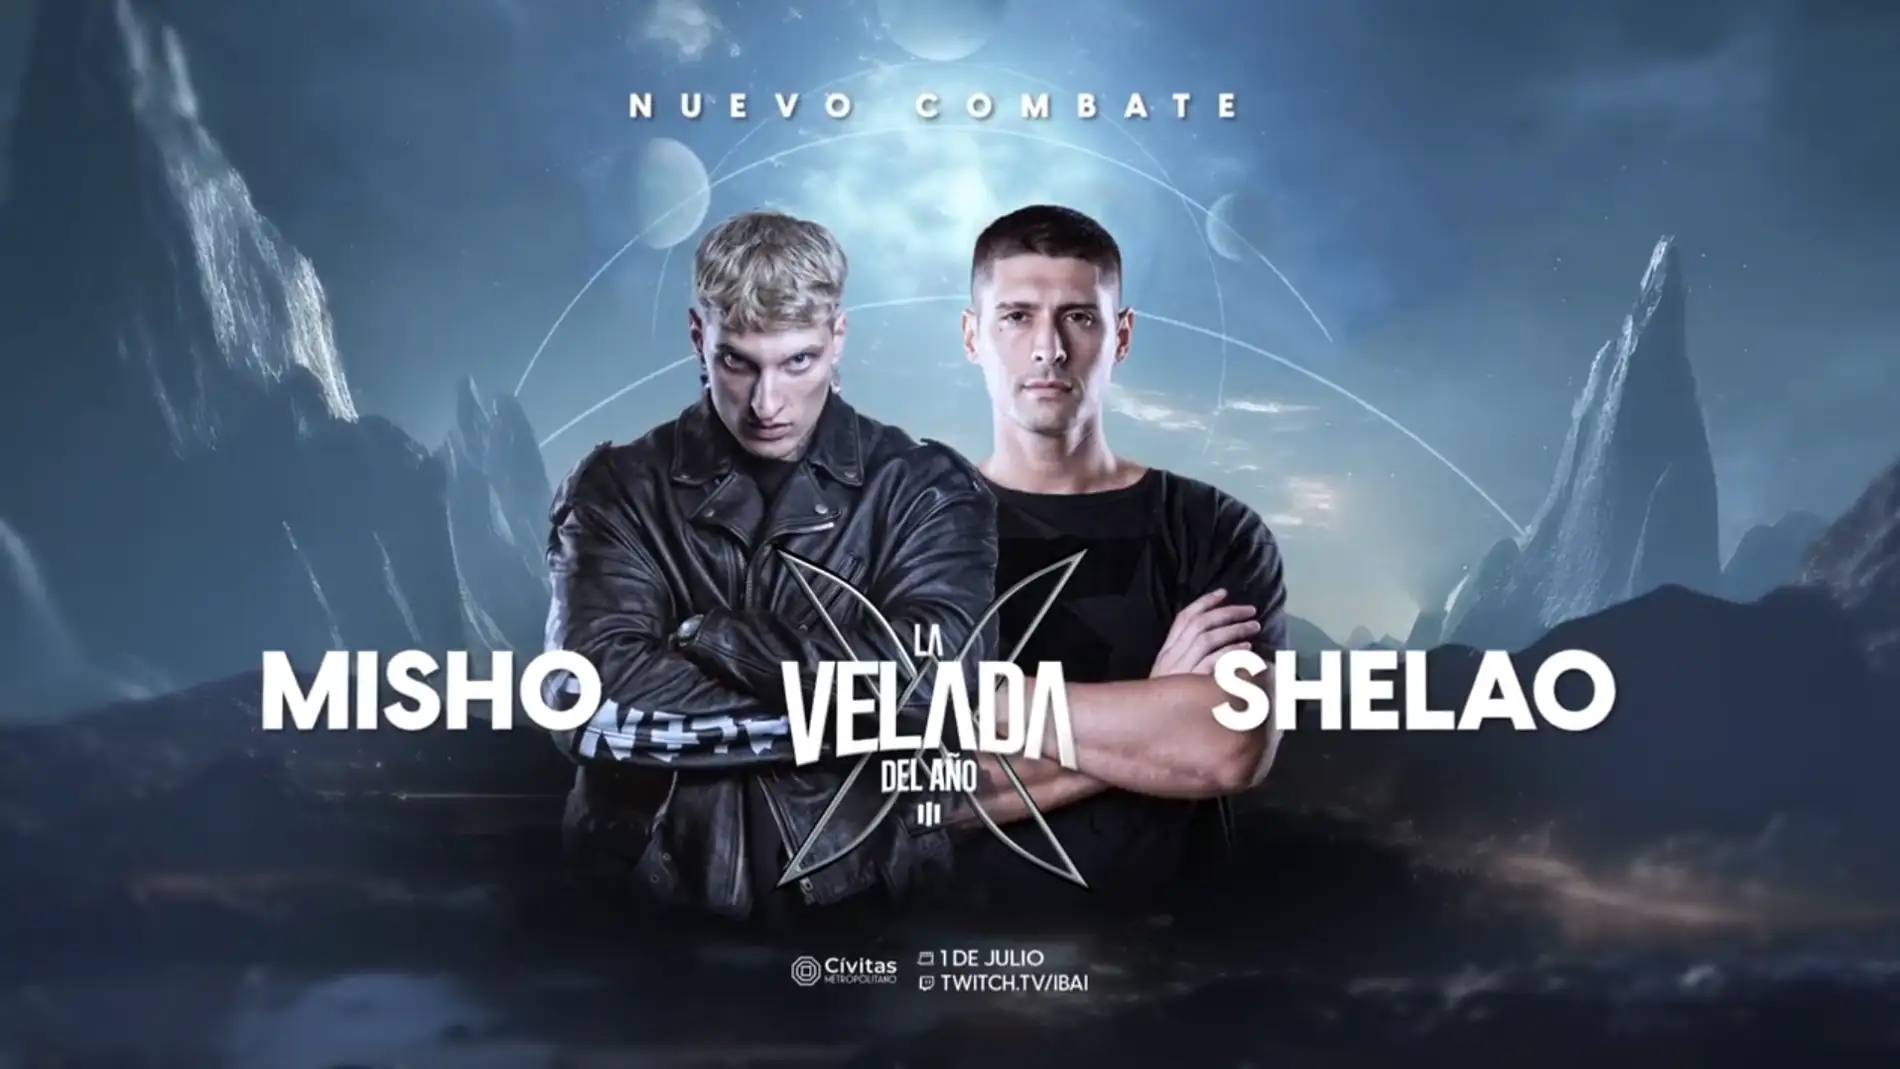 Misho y Shelao en el cartel de este nuevo combate de la Velada del Año 3.